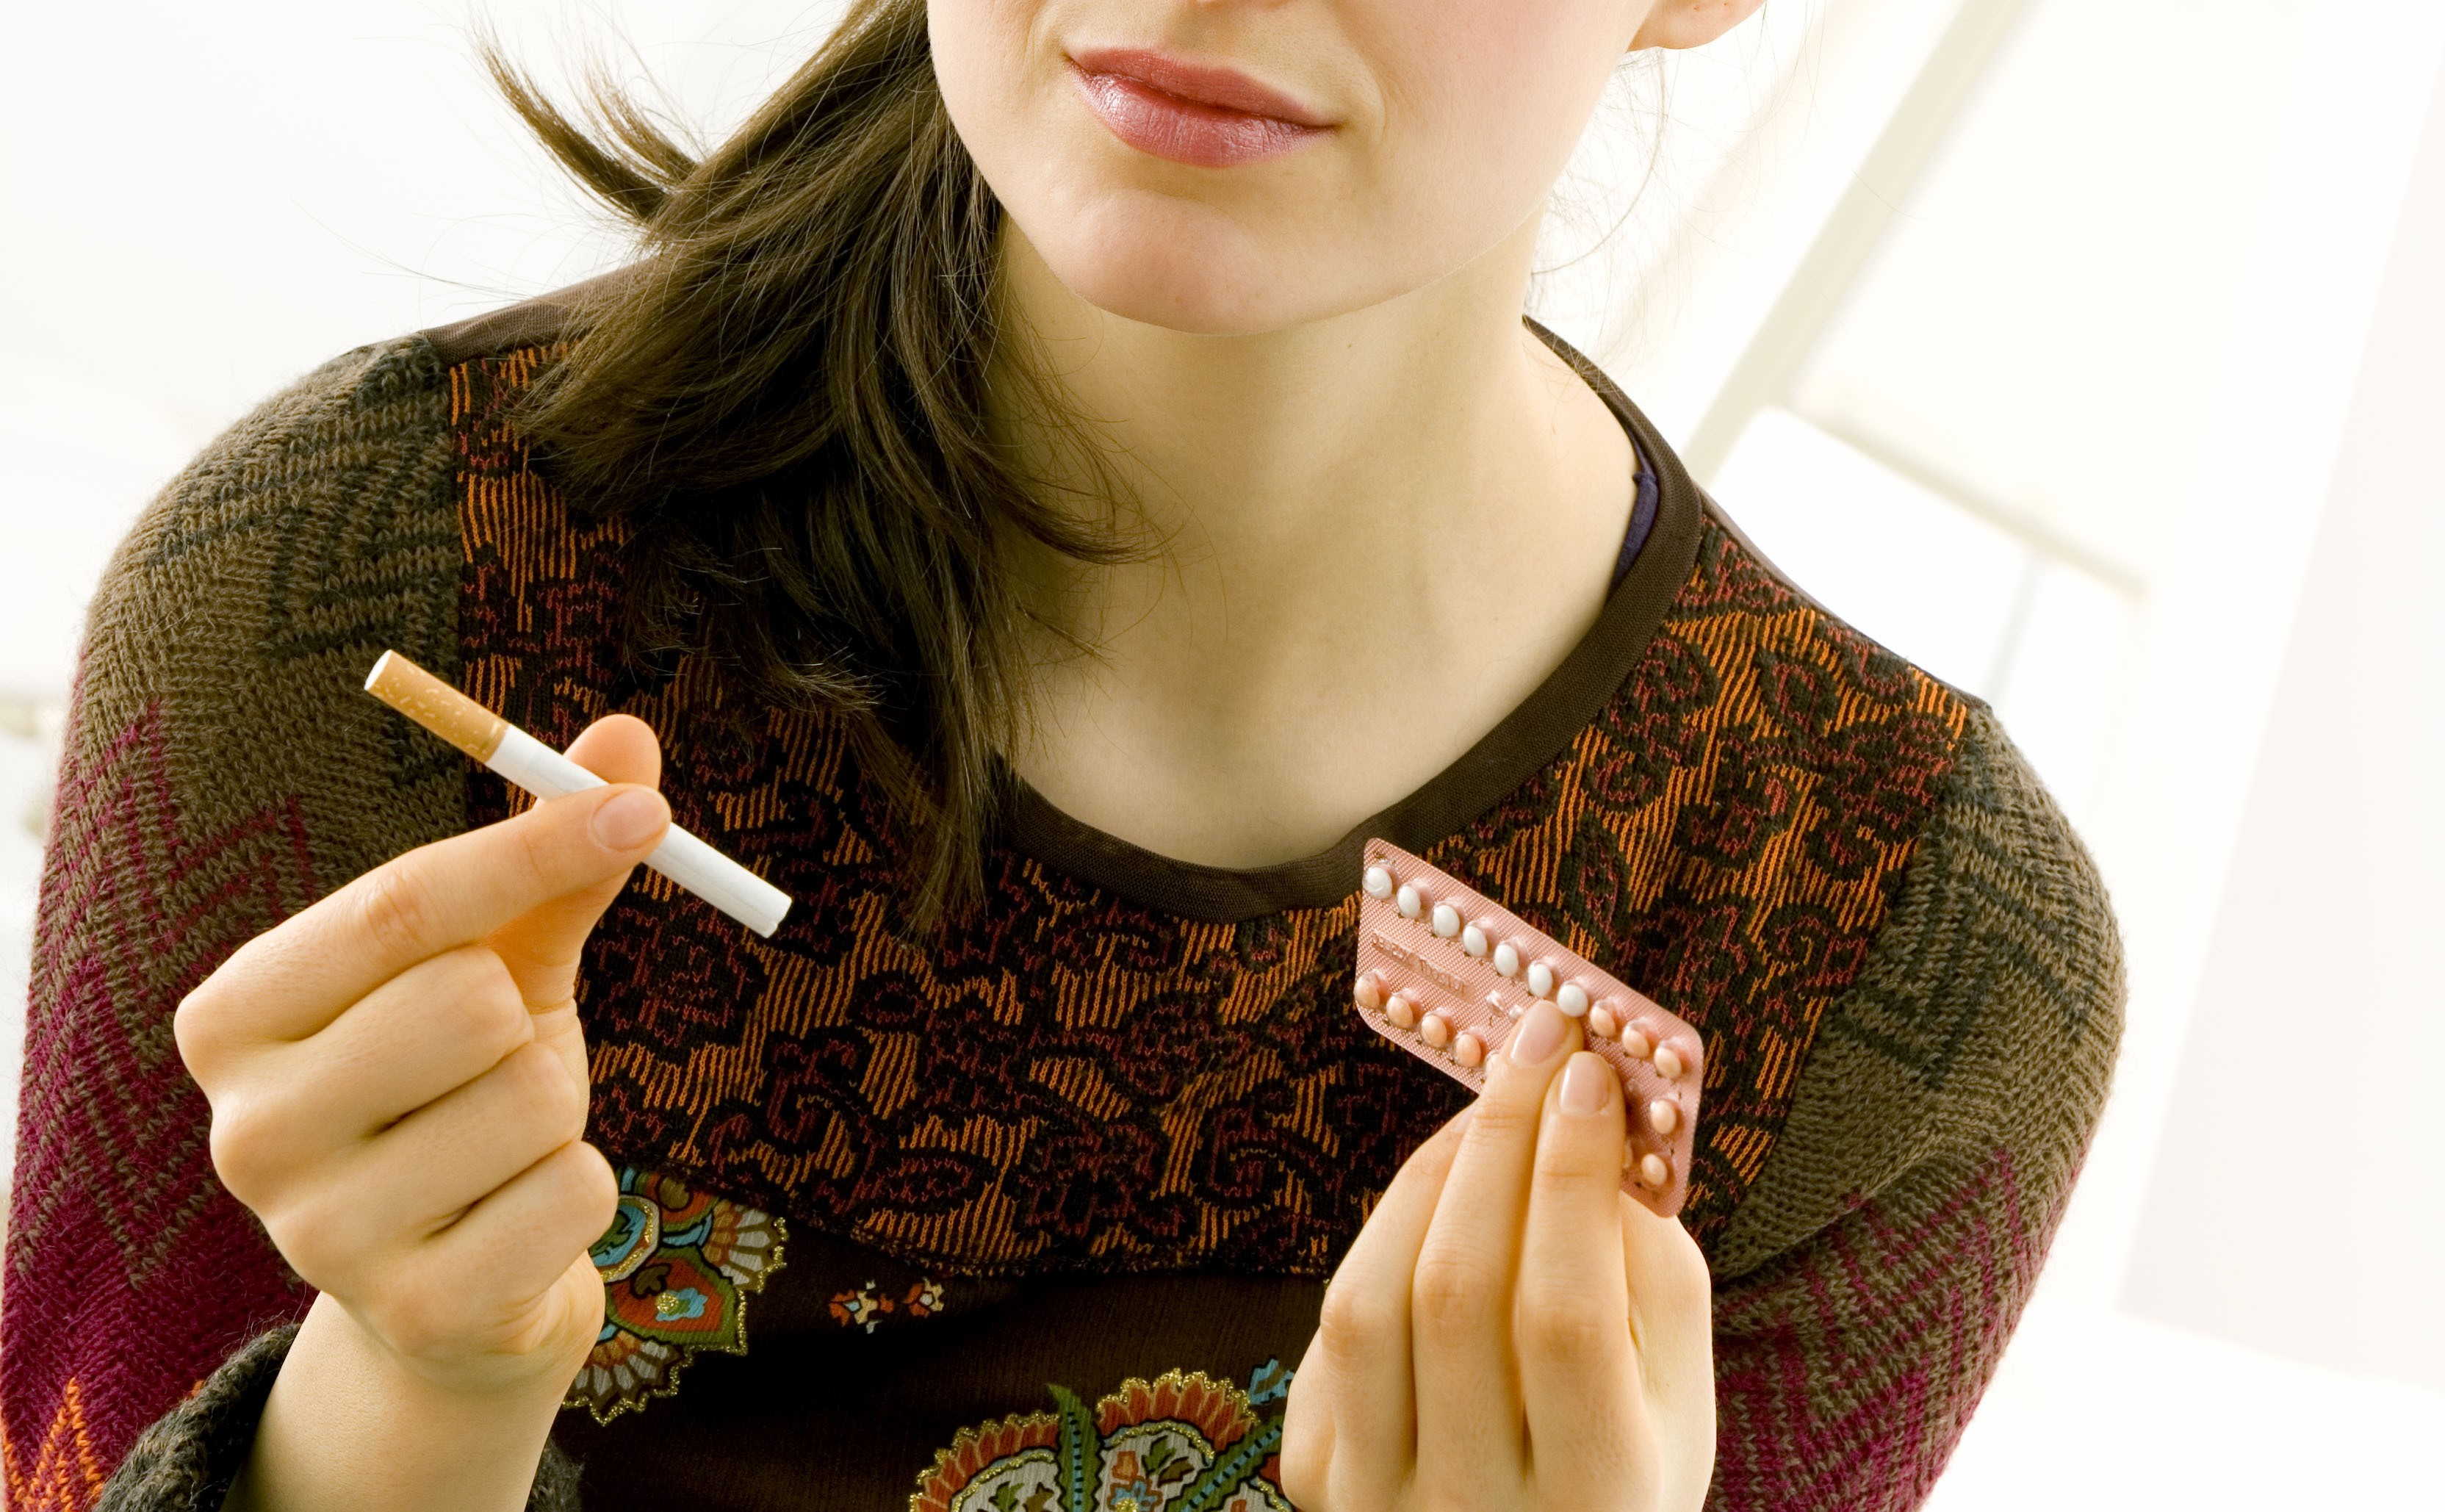 Pilule contraceptive et tabac… un vrai danger - Stop-tabac.ch